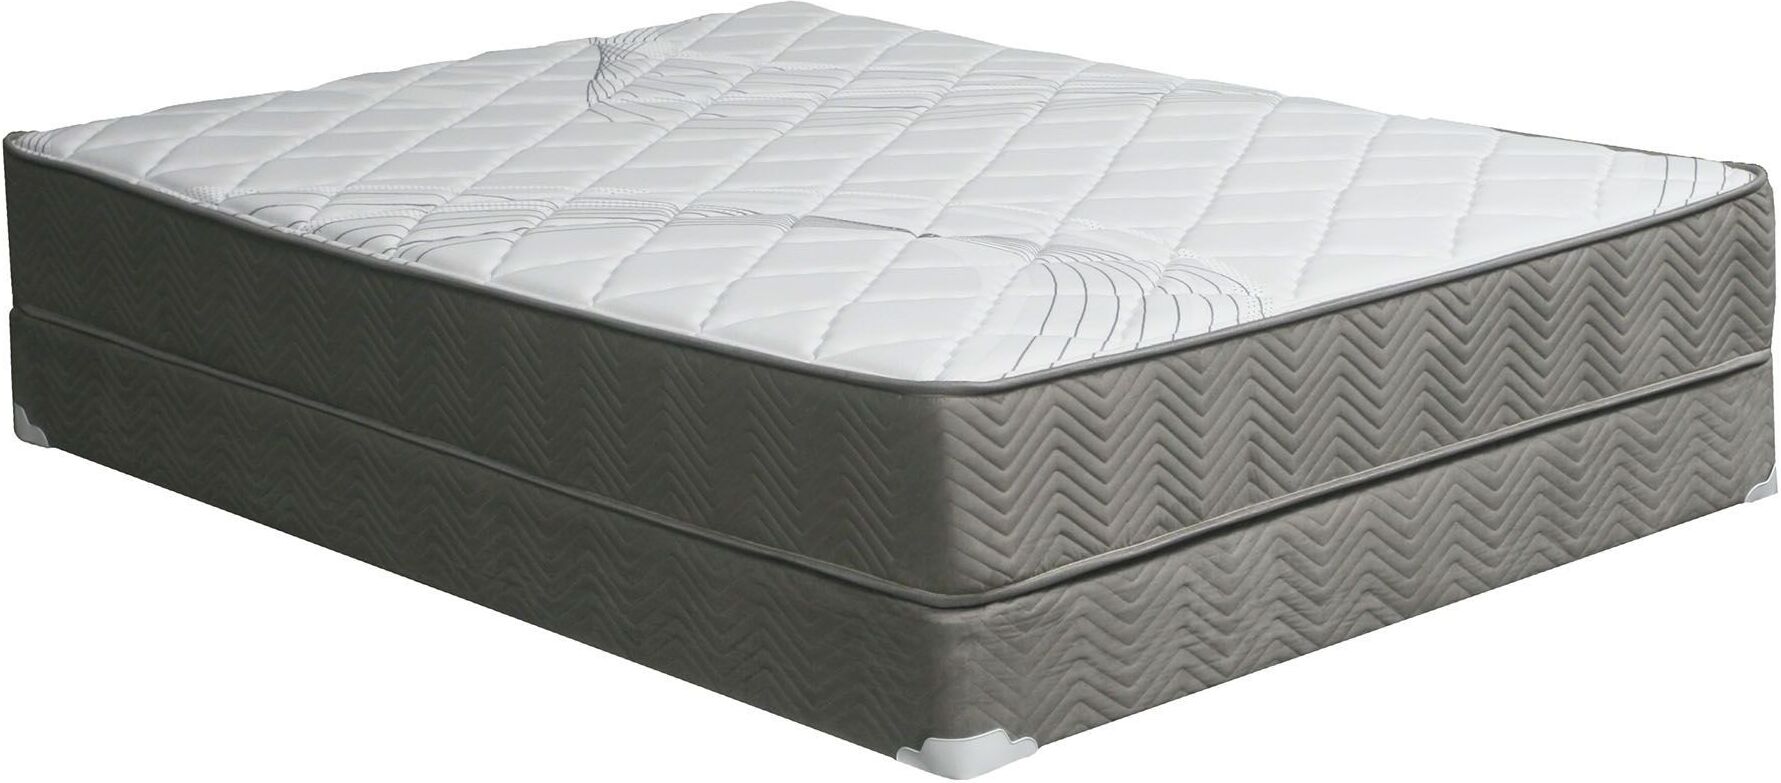 quee 10 deep pocket coil mattress